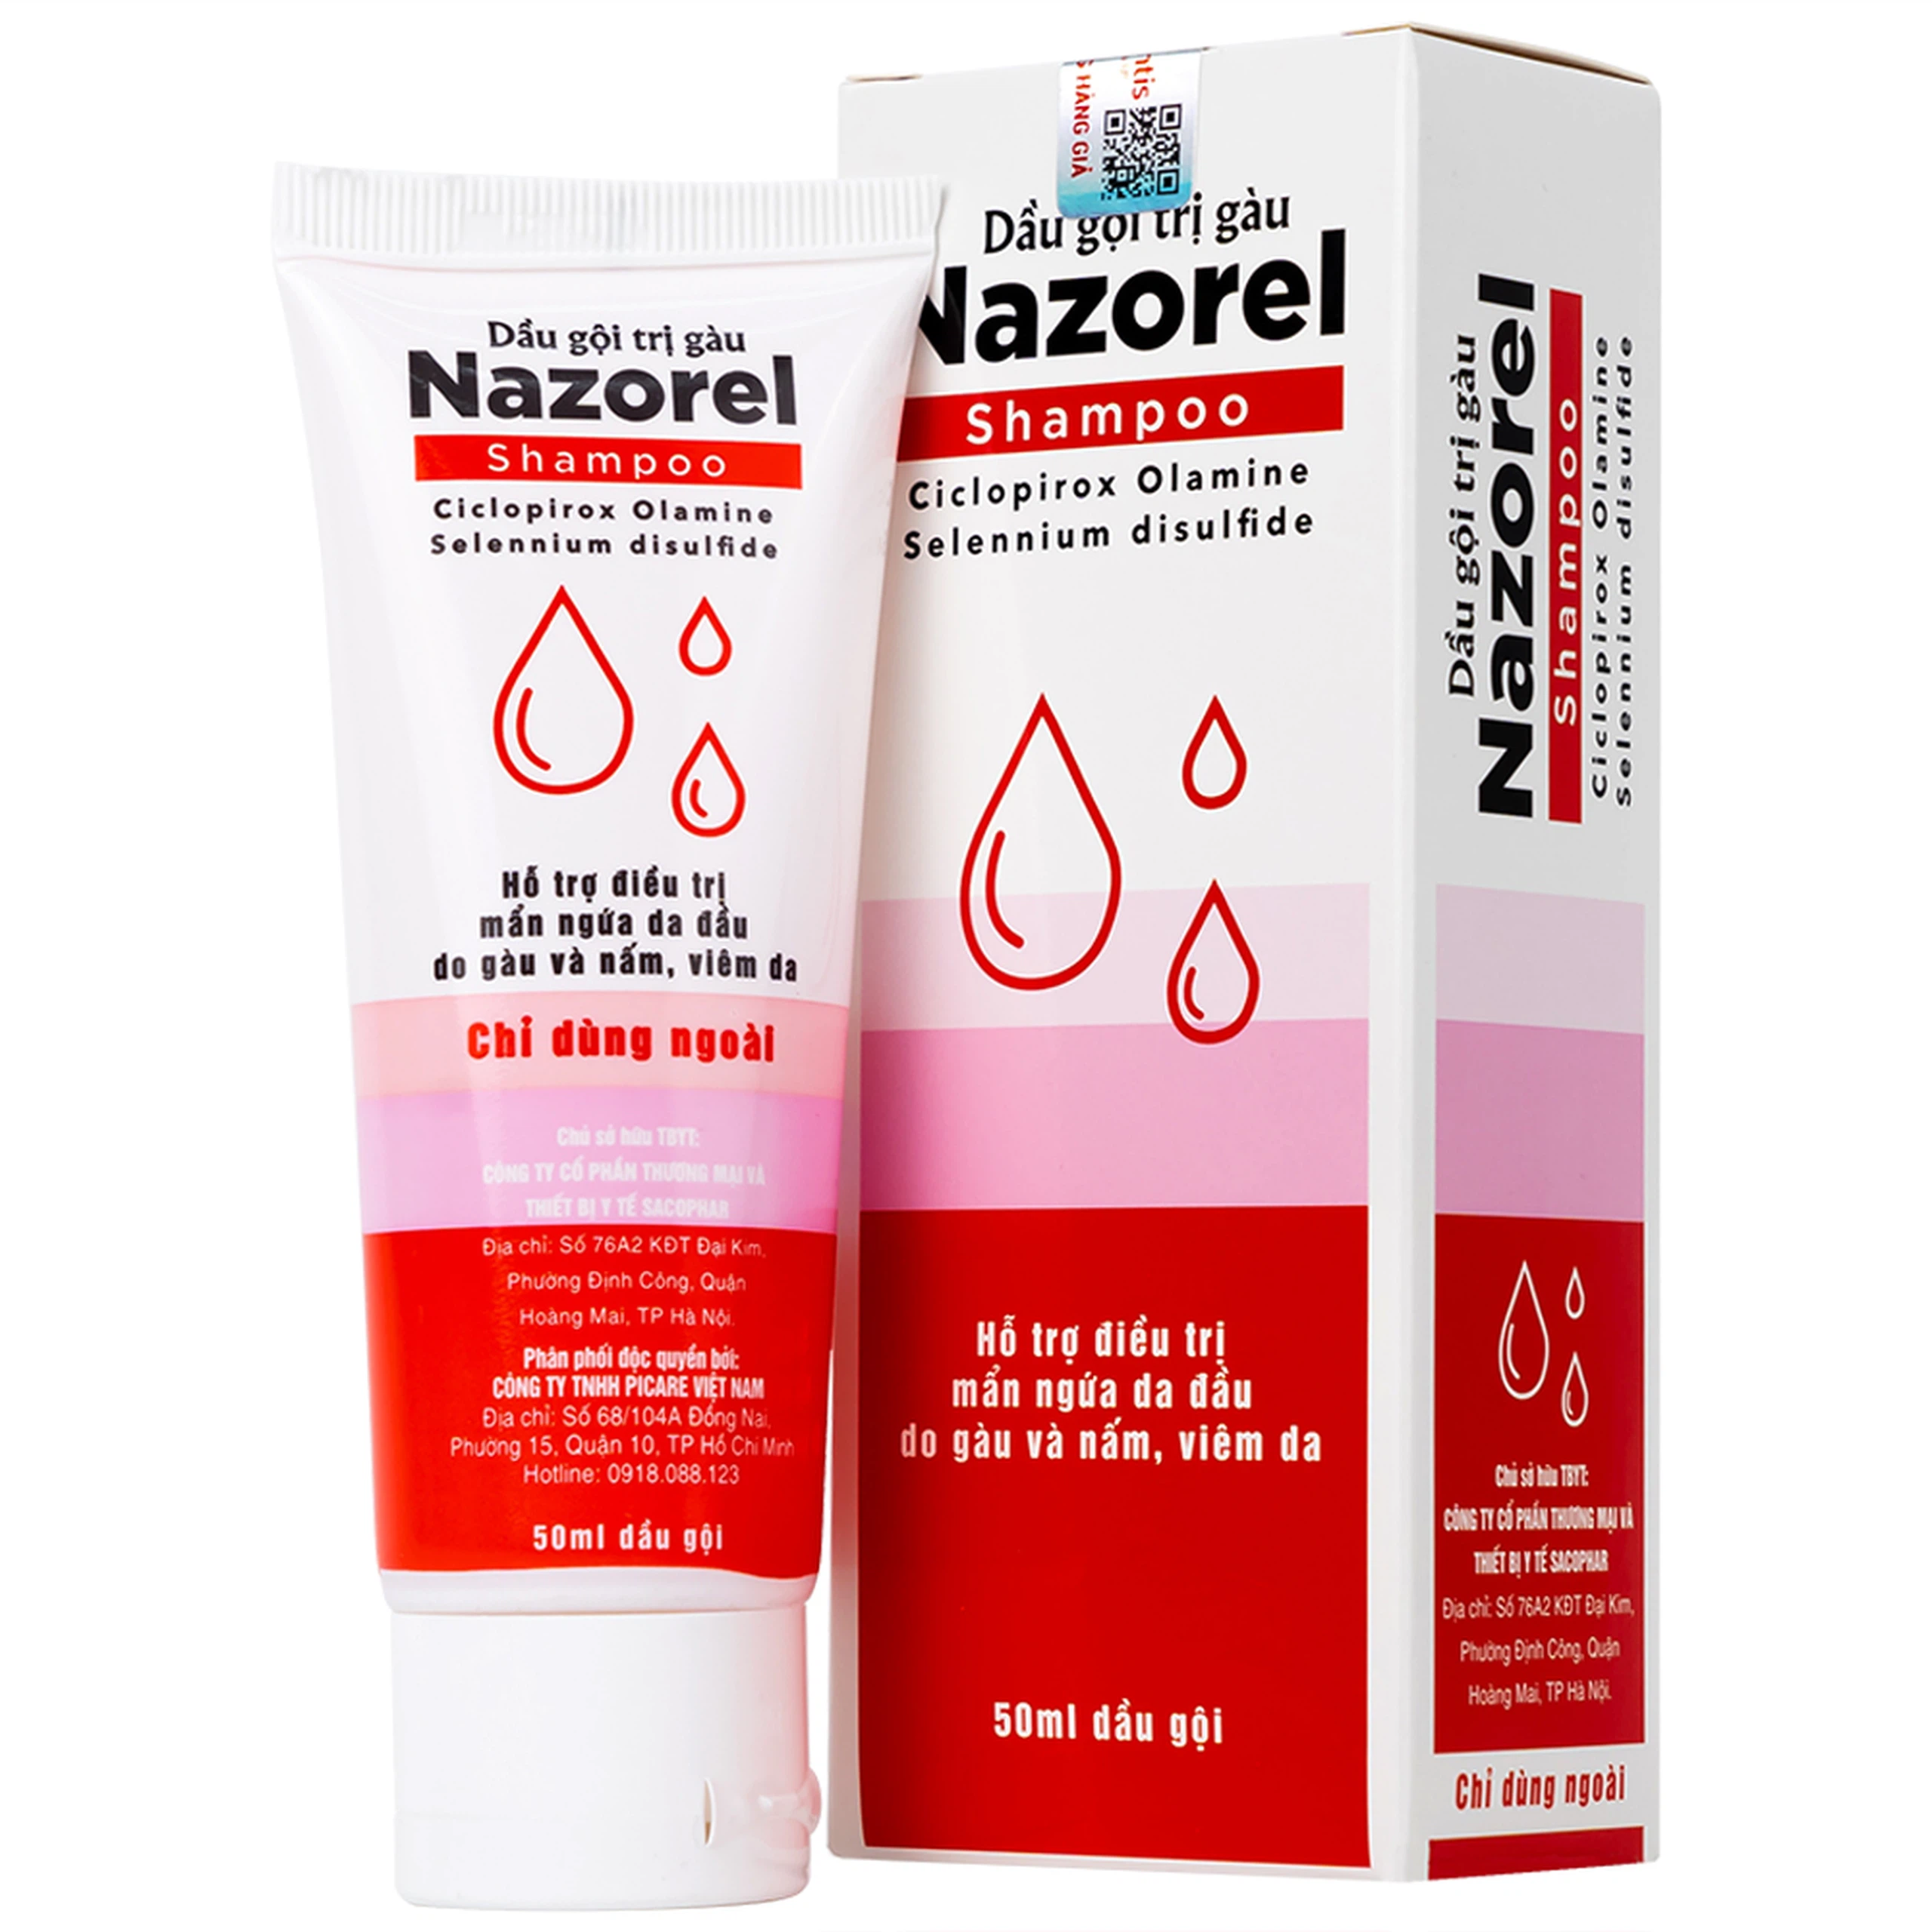 Dầu gội trị gàu Nazorel 50ml hỗ trợ điều trị mẩn ngứa da đầu do gàu và nấm, viêm da